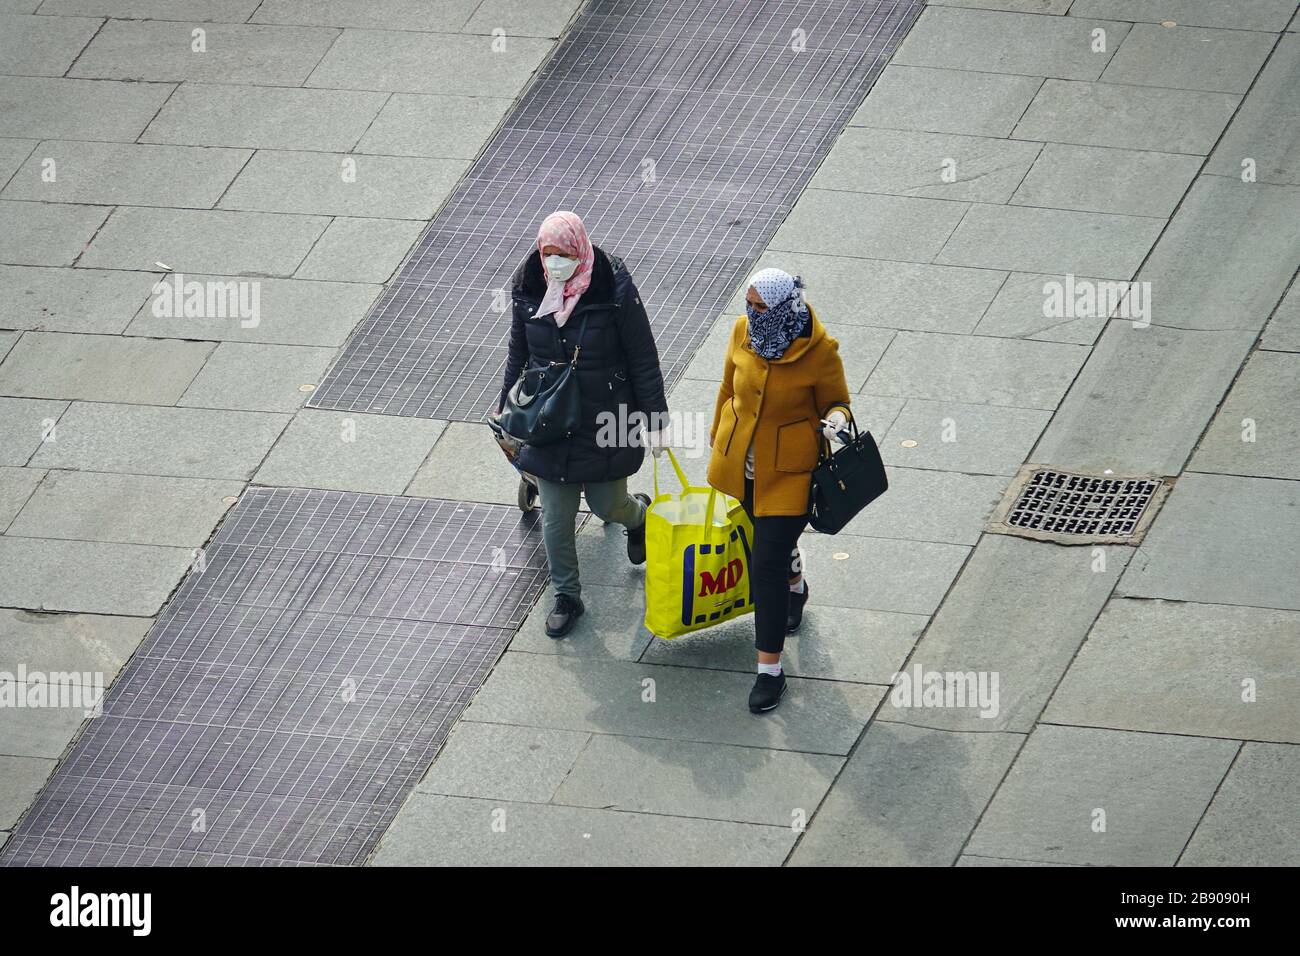 Les gens de retour de shopping portant des masques pour contenir la propagation de Coronavirus. Milan, Italie - mars 2020 Banque D'Images